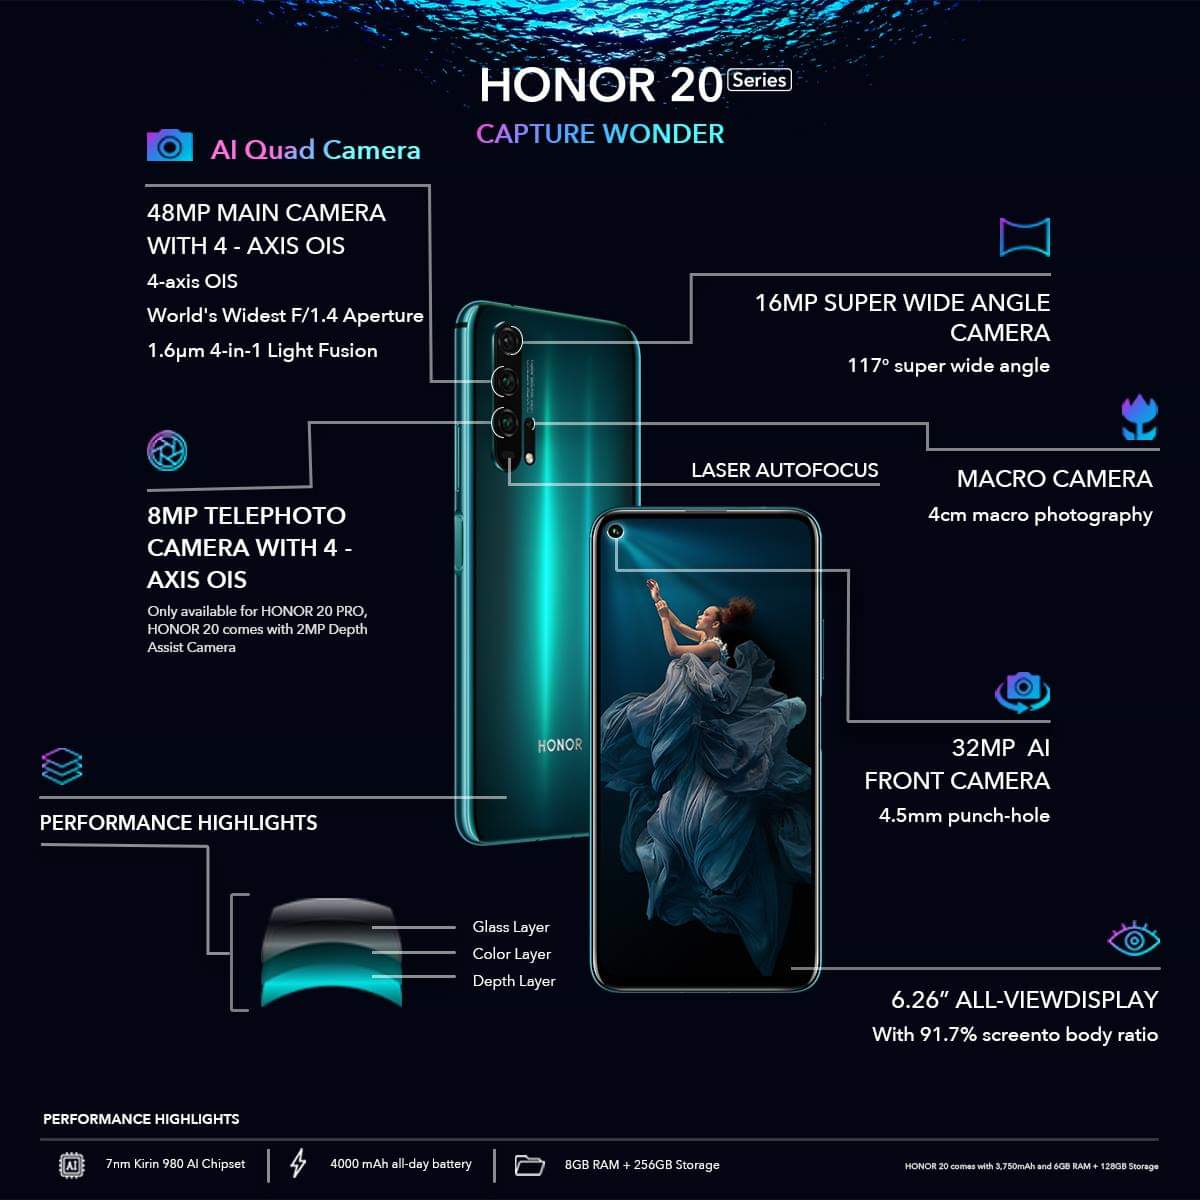 Honor-20-Honor-20-Pronun-Kamerası-Bize-Neler-Sunuyor